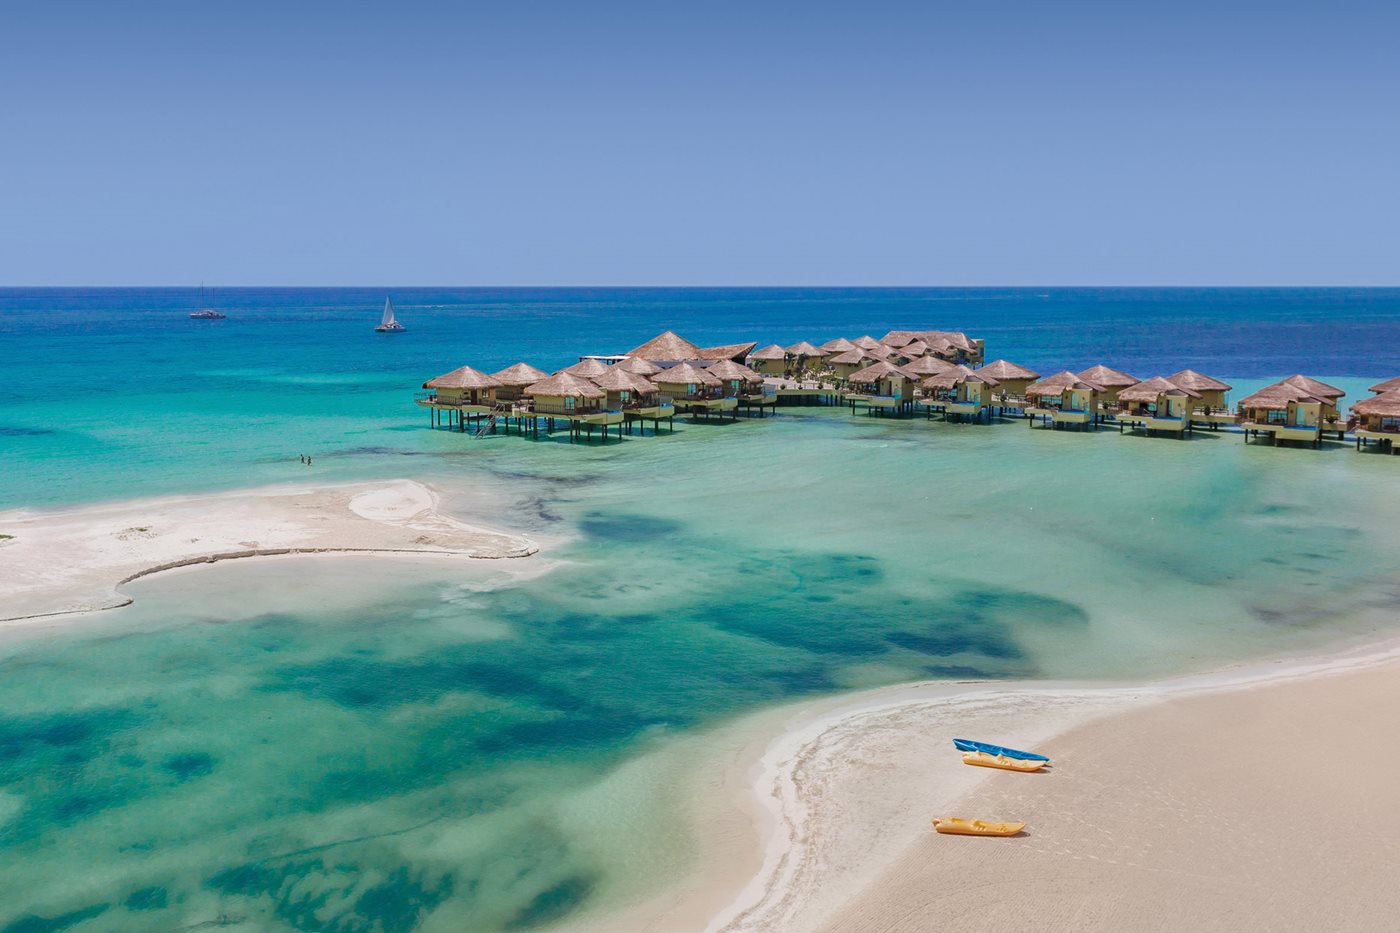 luxury hotels in cancun - El Dorado Maroma by Karisma